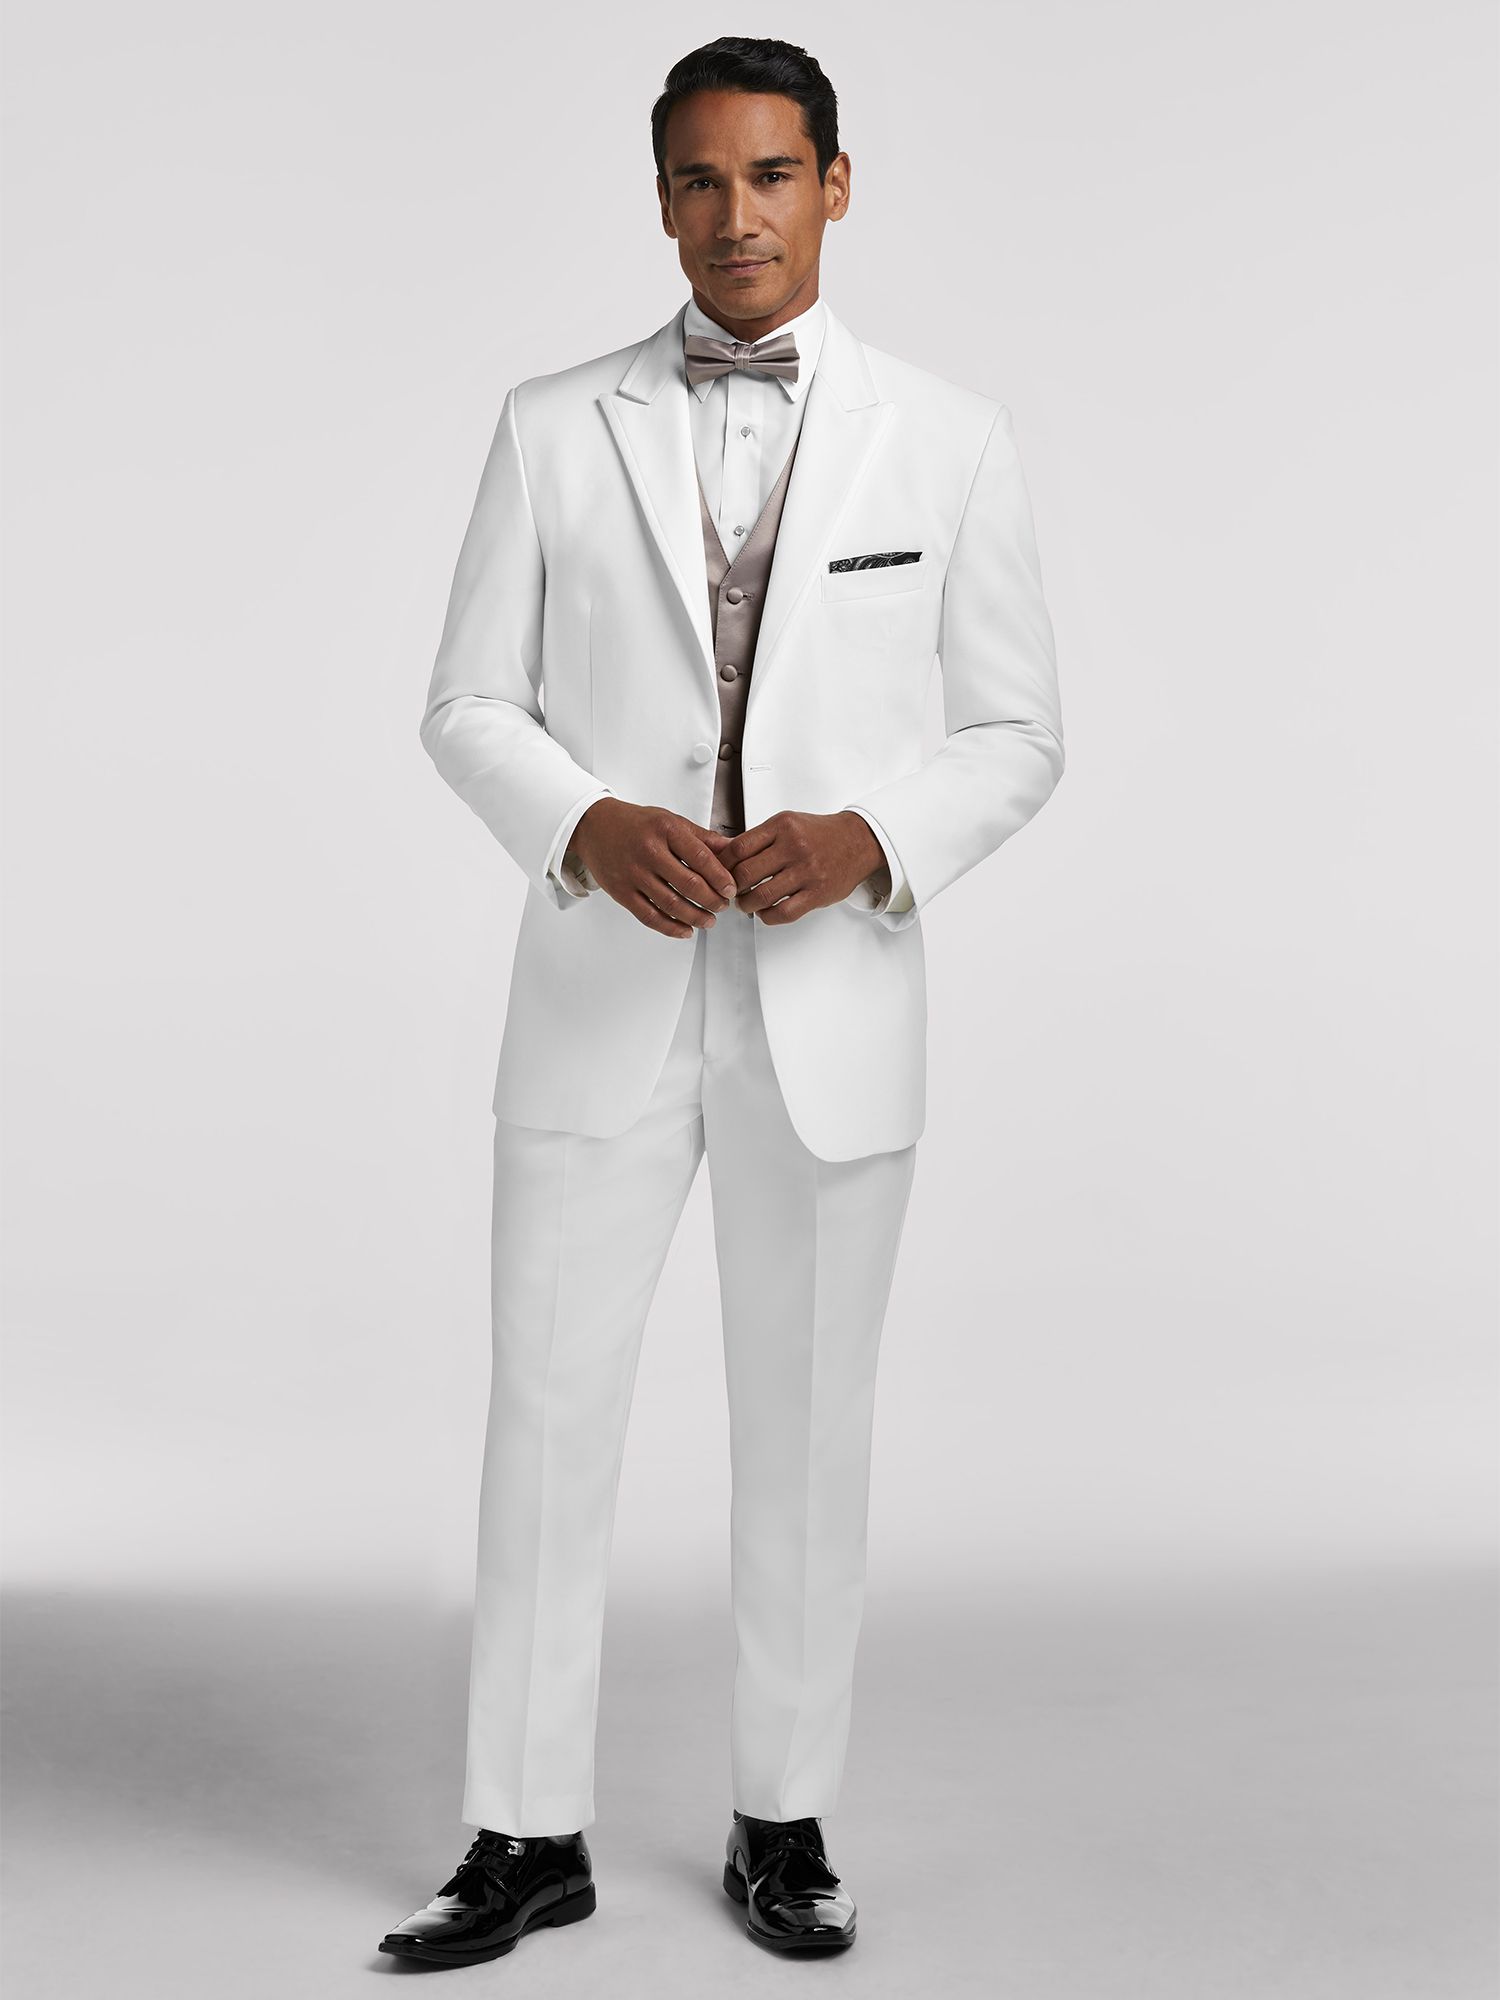 Wedding Tuxedos, Wedding Suits for Men & Groom | Men's Wearhouse